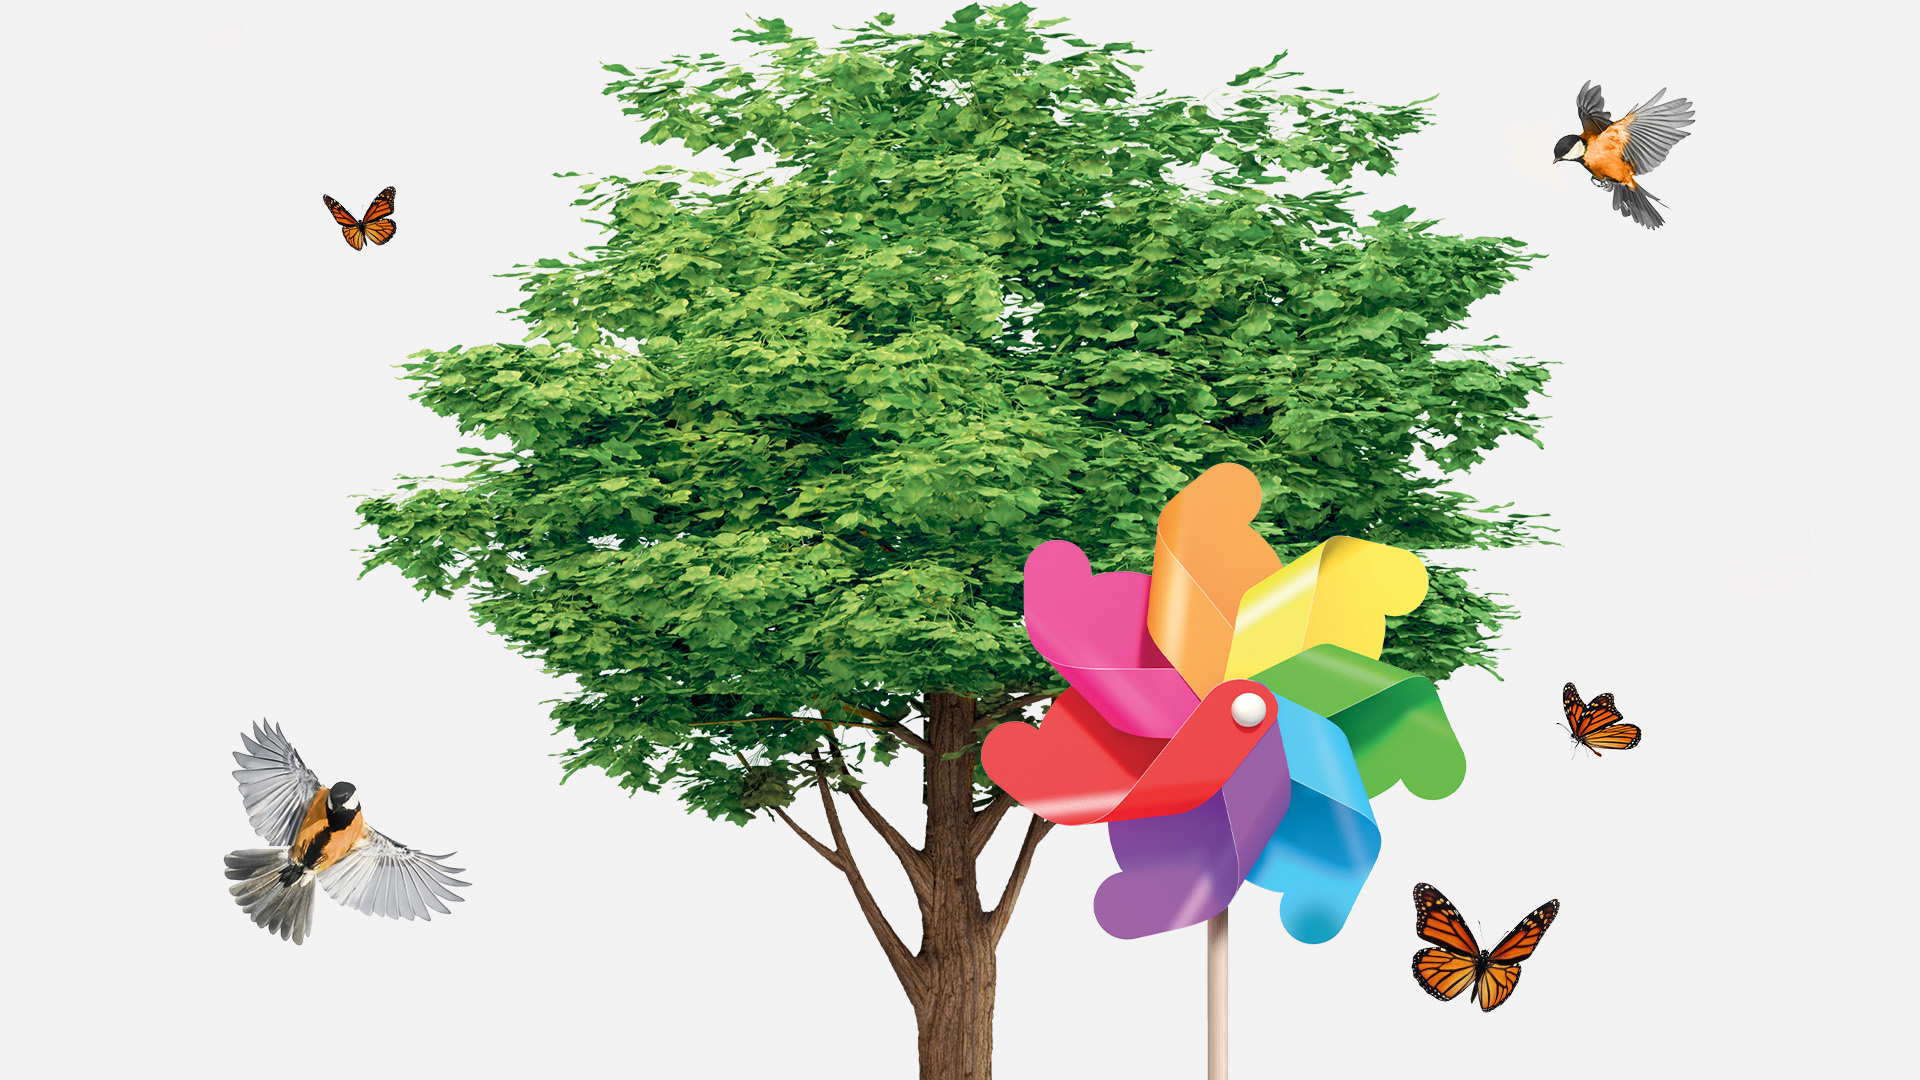 Albero con farfalle e uccelli che volano, simbolo di sostenibilità